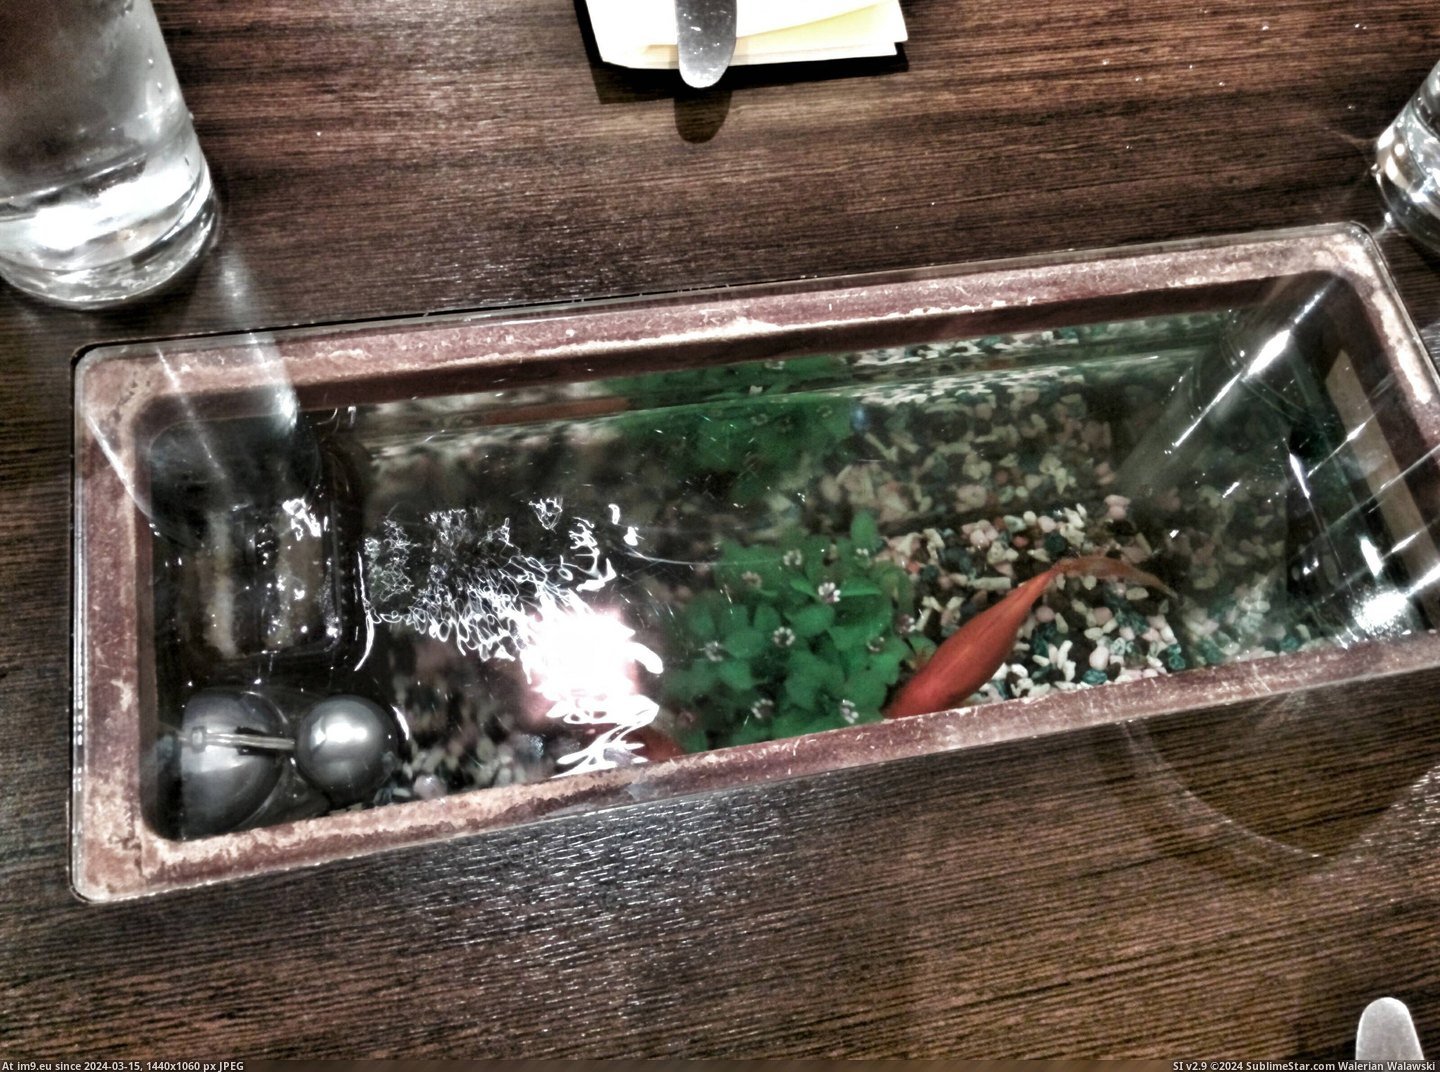 #Bowl #Restaurant #Tables #Fish [Mildlyinteresting] The tables in this restaurant have a fish bowl in the middle of them. Pic. (Bild von album My r/MILDLYINTERESTING favs))